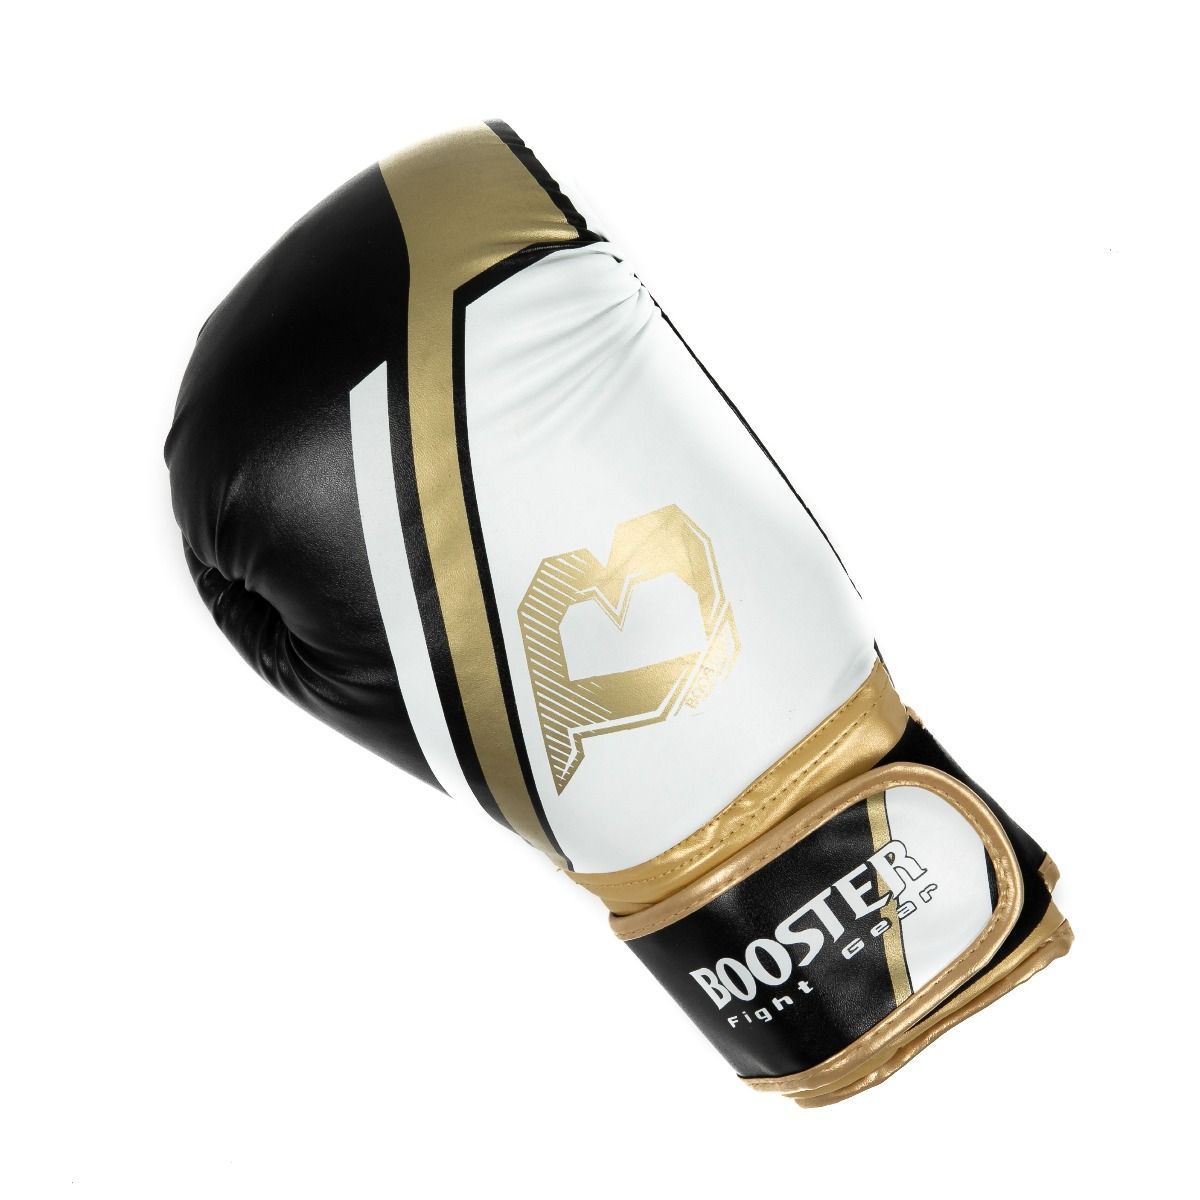 Booster Leather Boxing Gloves BT SPARRING V2 GOLD